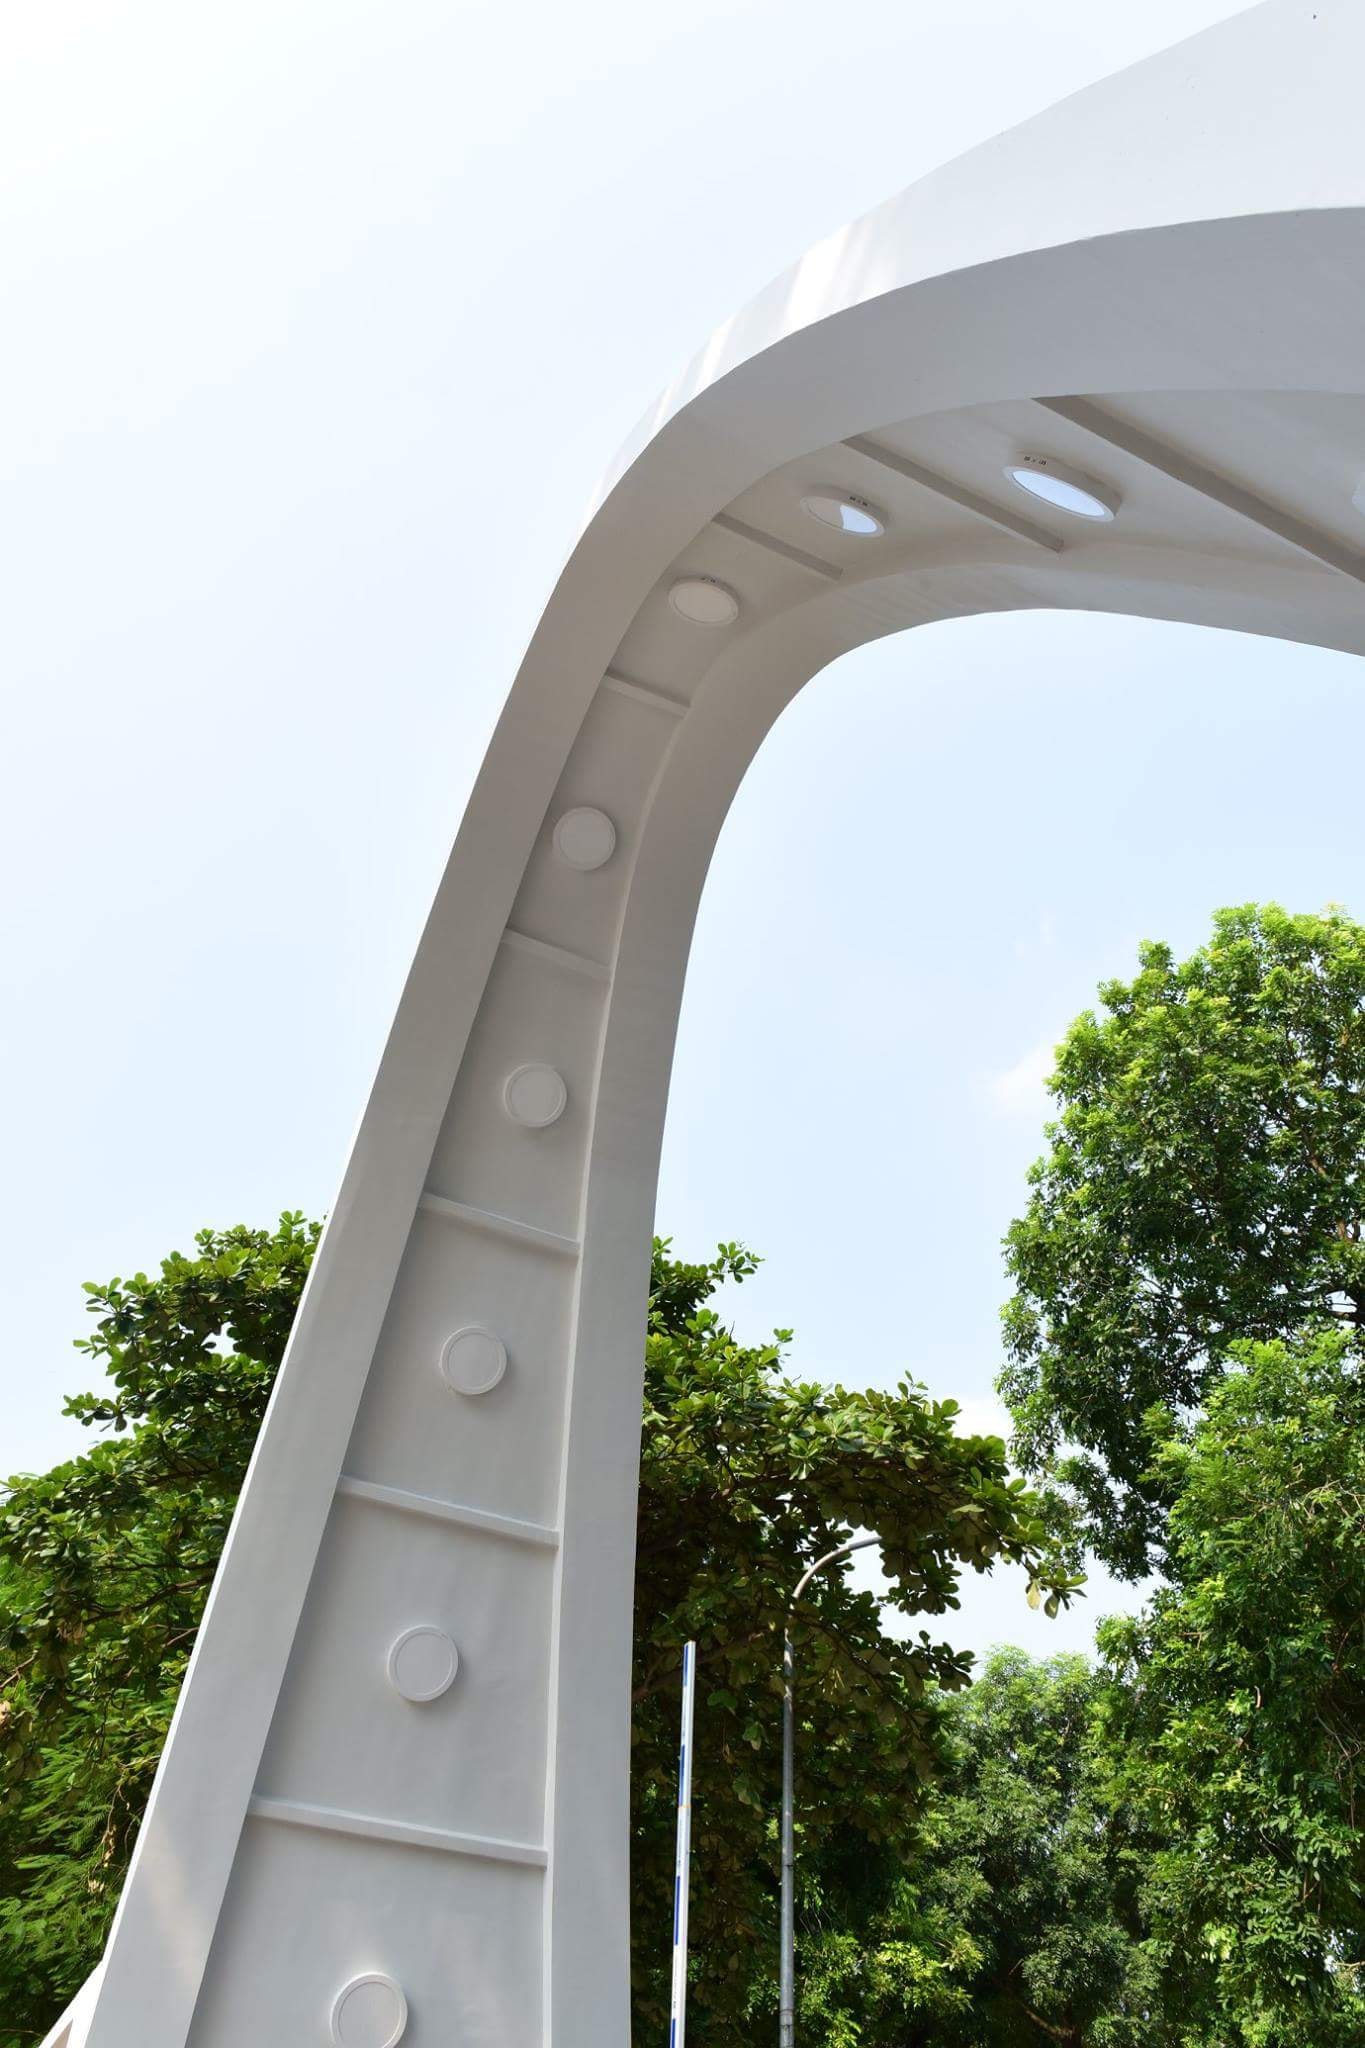 Những chiếc cổng trường "bá đạo" nhất Việt Nam: Từ parabol đến thiết kế xiêu vẹo, "gi gỉ gì gi" dáng gì cũng có- Ảnh 4.